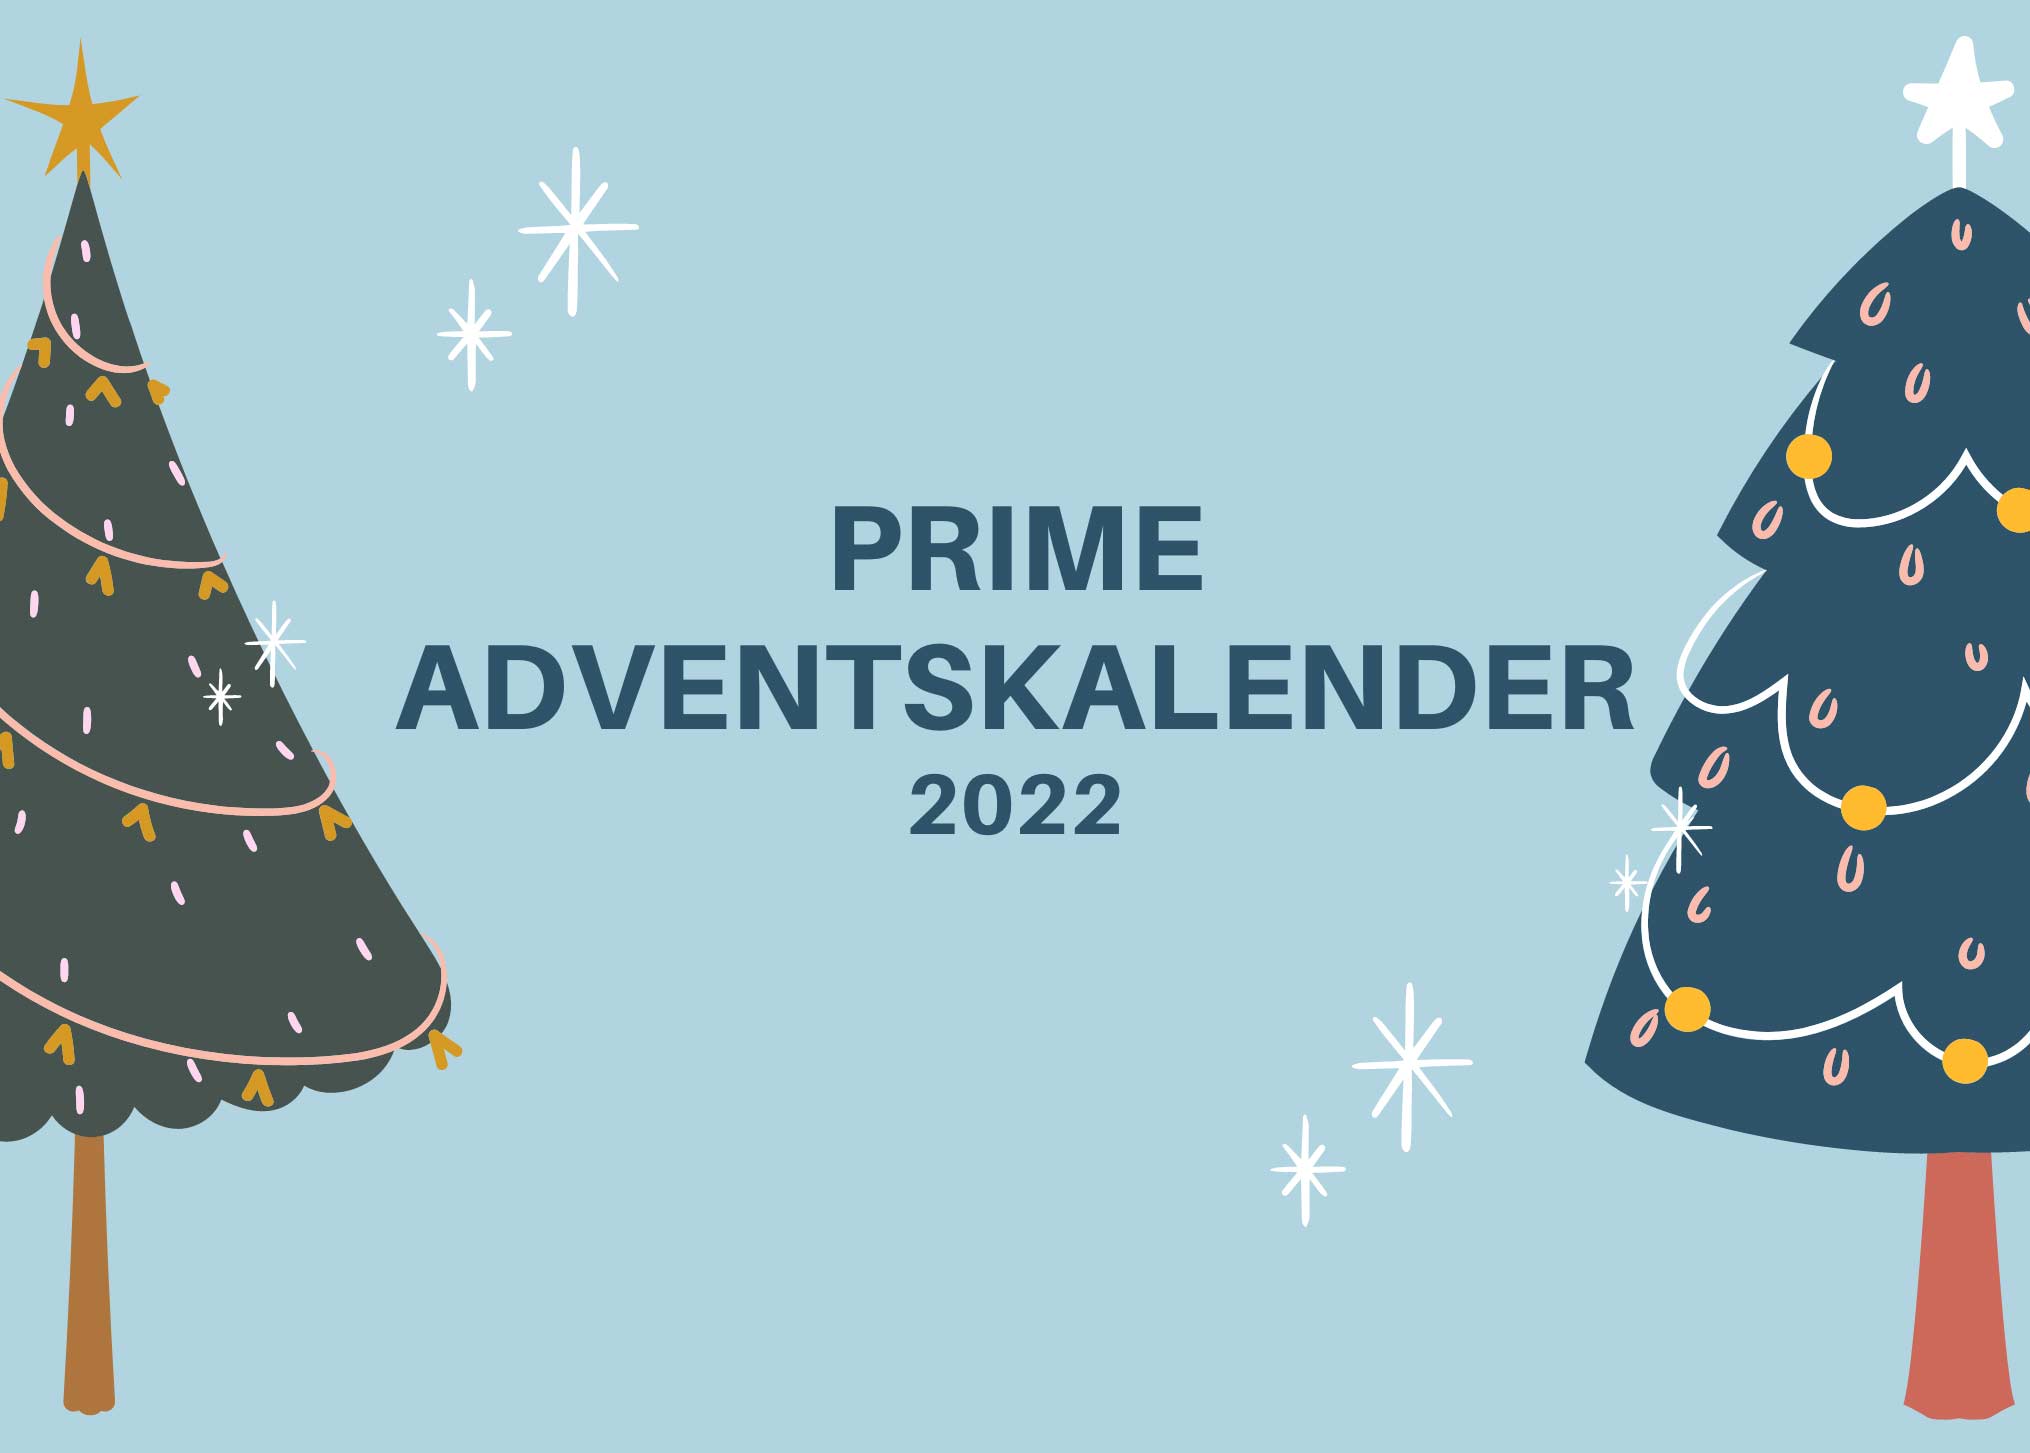 PRIME Adventskalender 2022